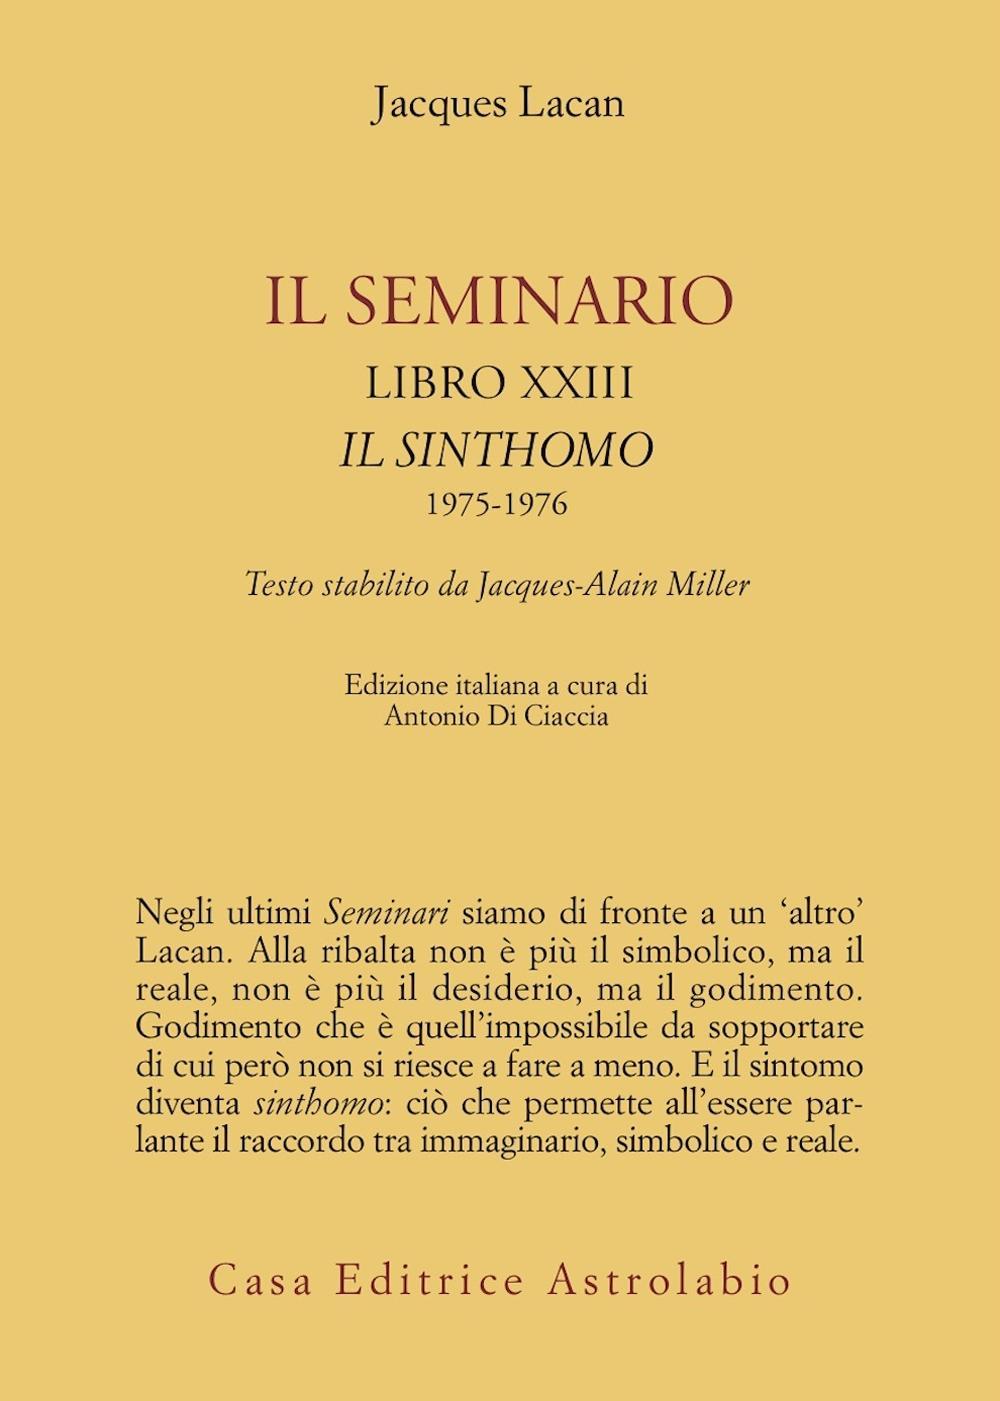 Il seminario. Libro XXIII. Il sinthomo 1975-1976. Testo stabilito da Jacques-Alain Miller